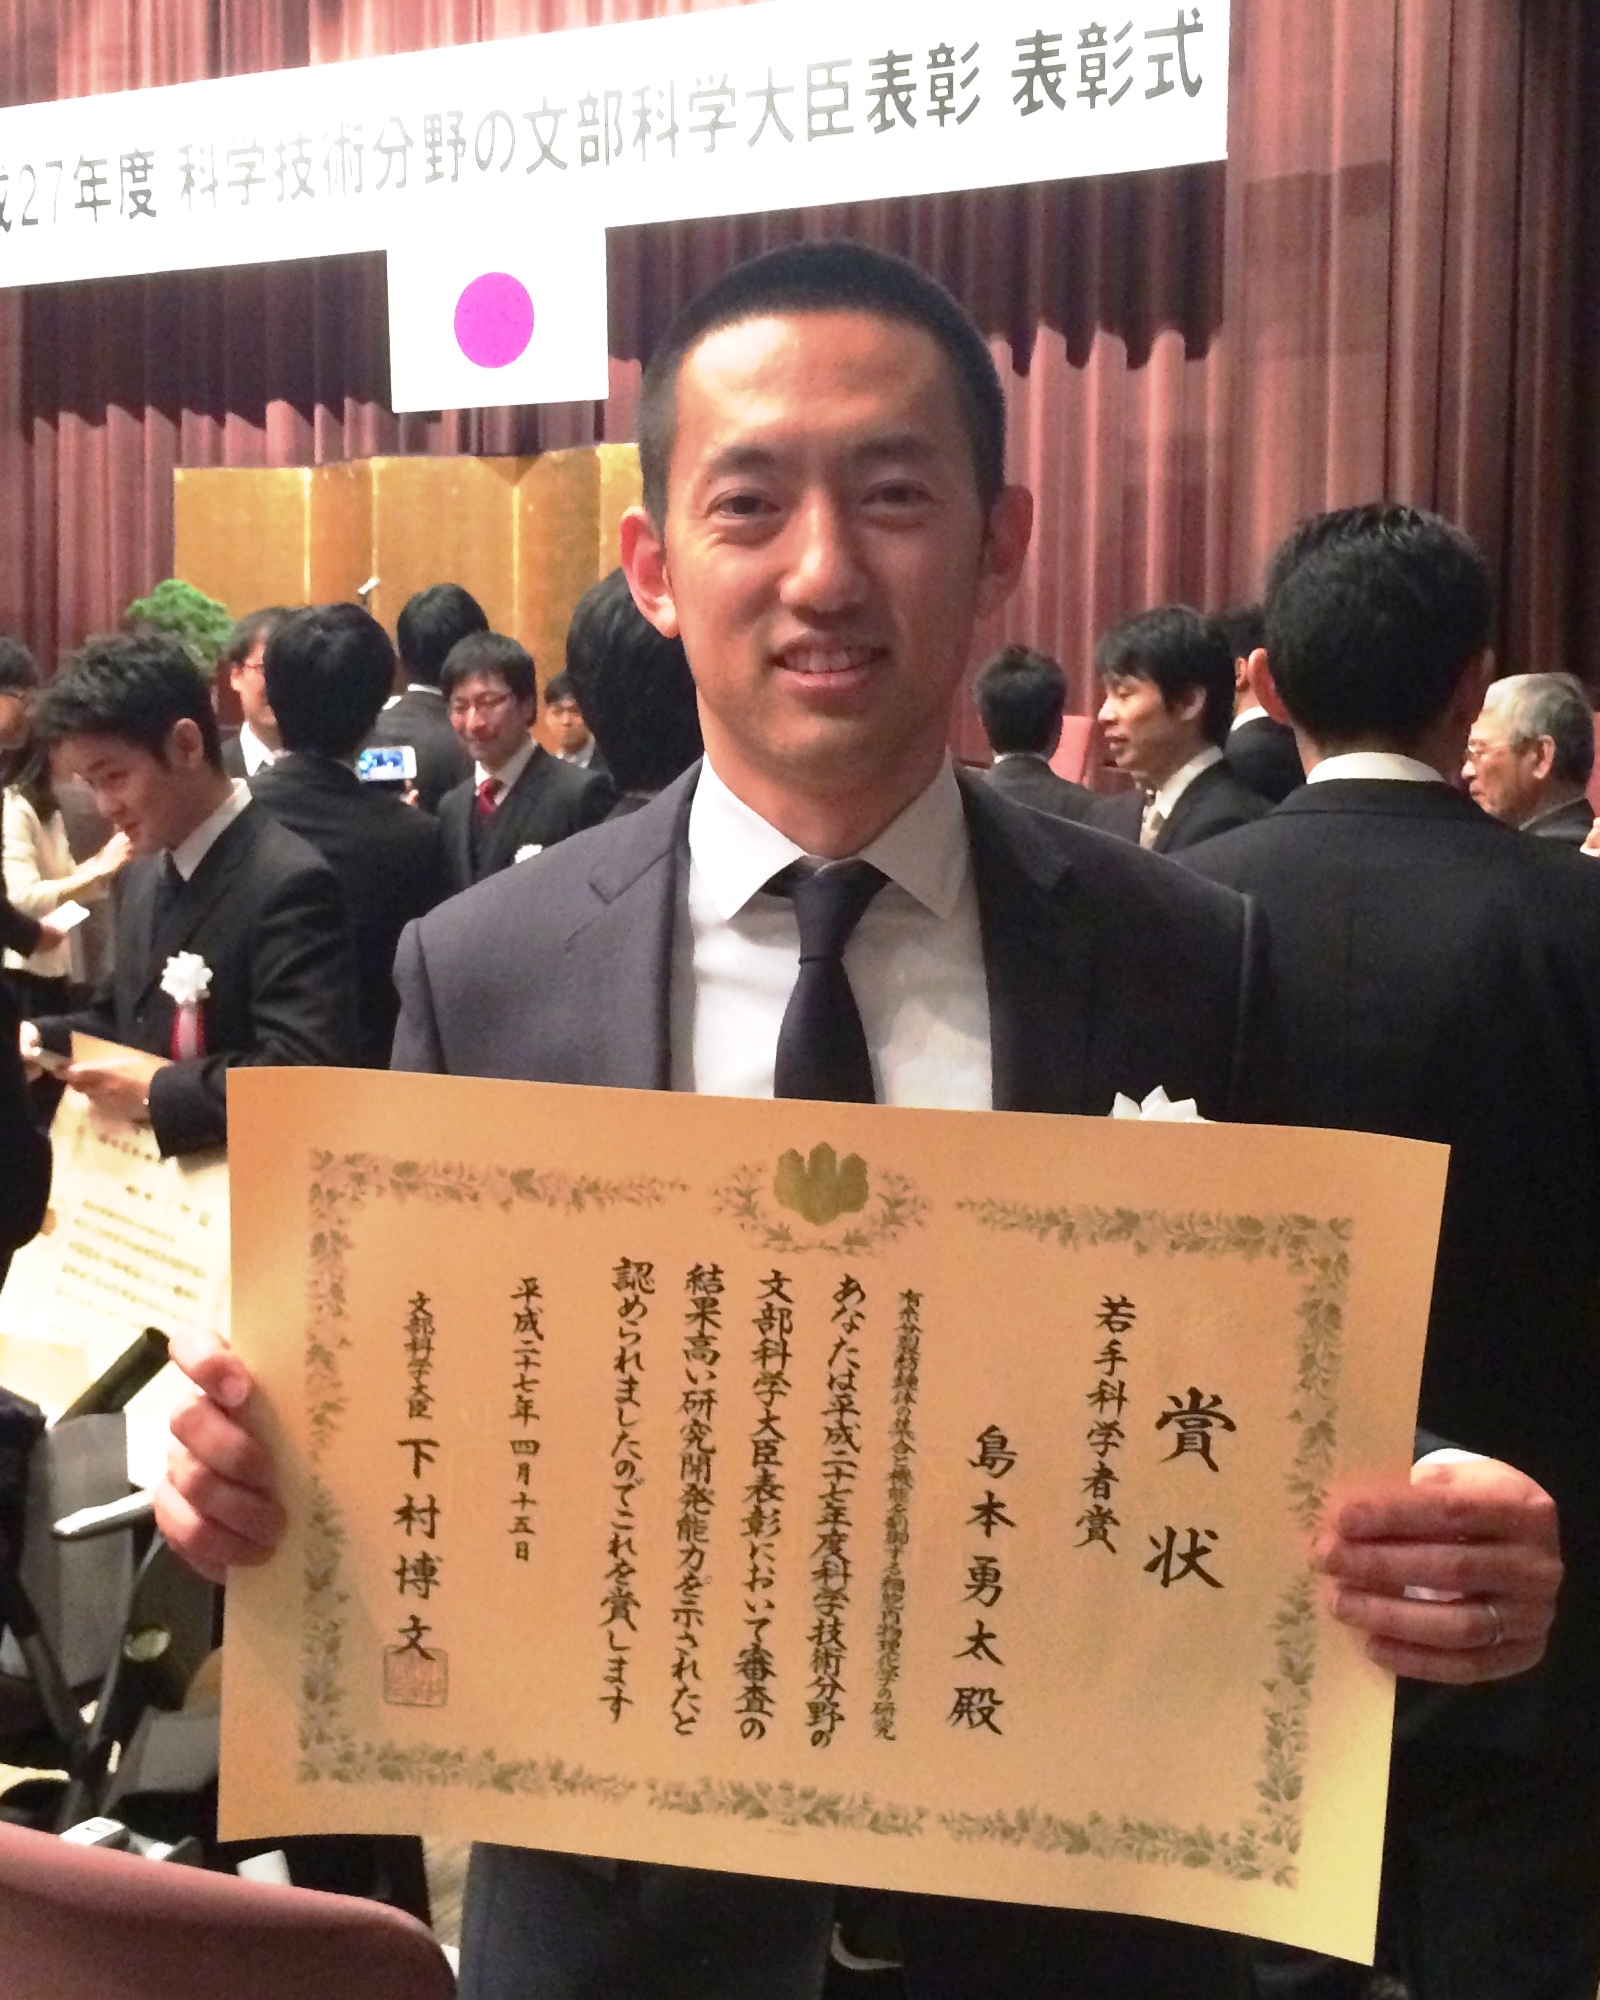 定量メカノバイオロジー研究室の島本勇太准教授が平成27年度文部科学大臣表彰 若手科学者賞を受賞